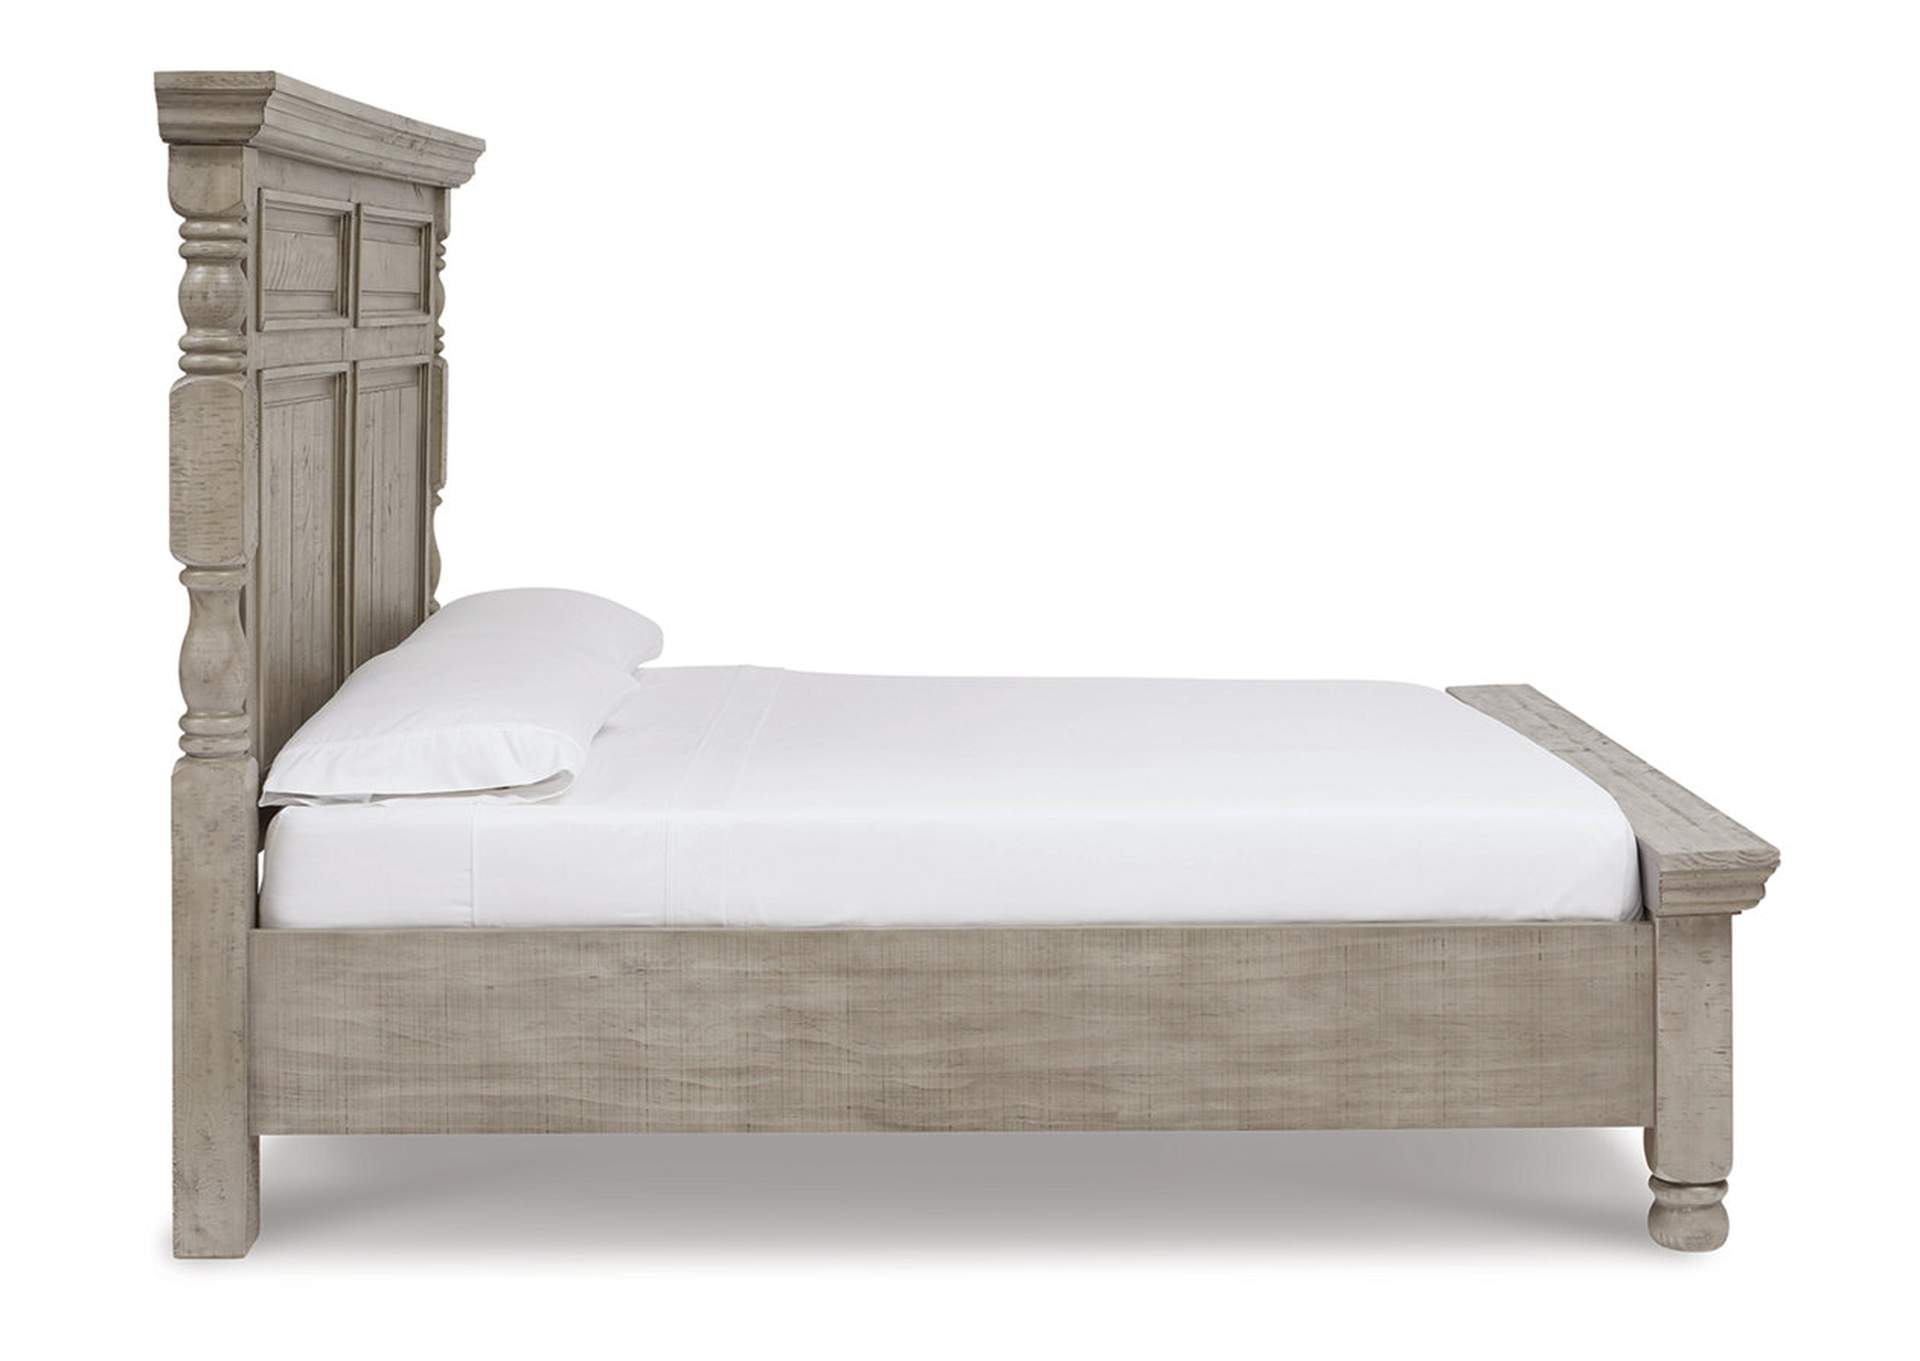 Harrastone King Panel Bed with Mirrored Dresser,Millennium